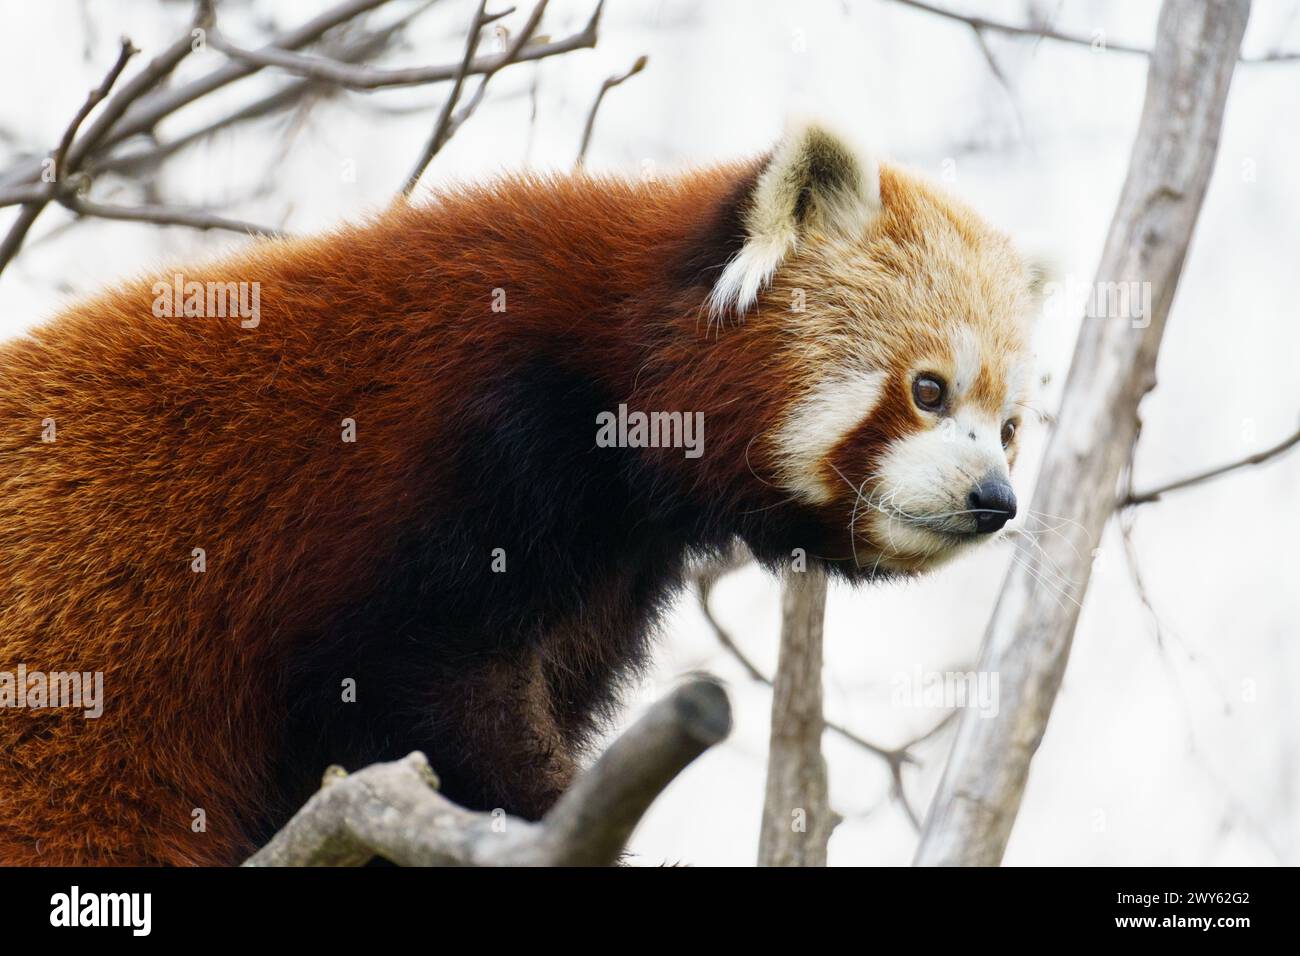 Le panda roux (Ailurus fulgens), ou petit panda, est un petit mammifère originaire de l'est de l'Himalaya et du sud-ouest de la Chine Banque D'Images